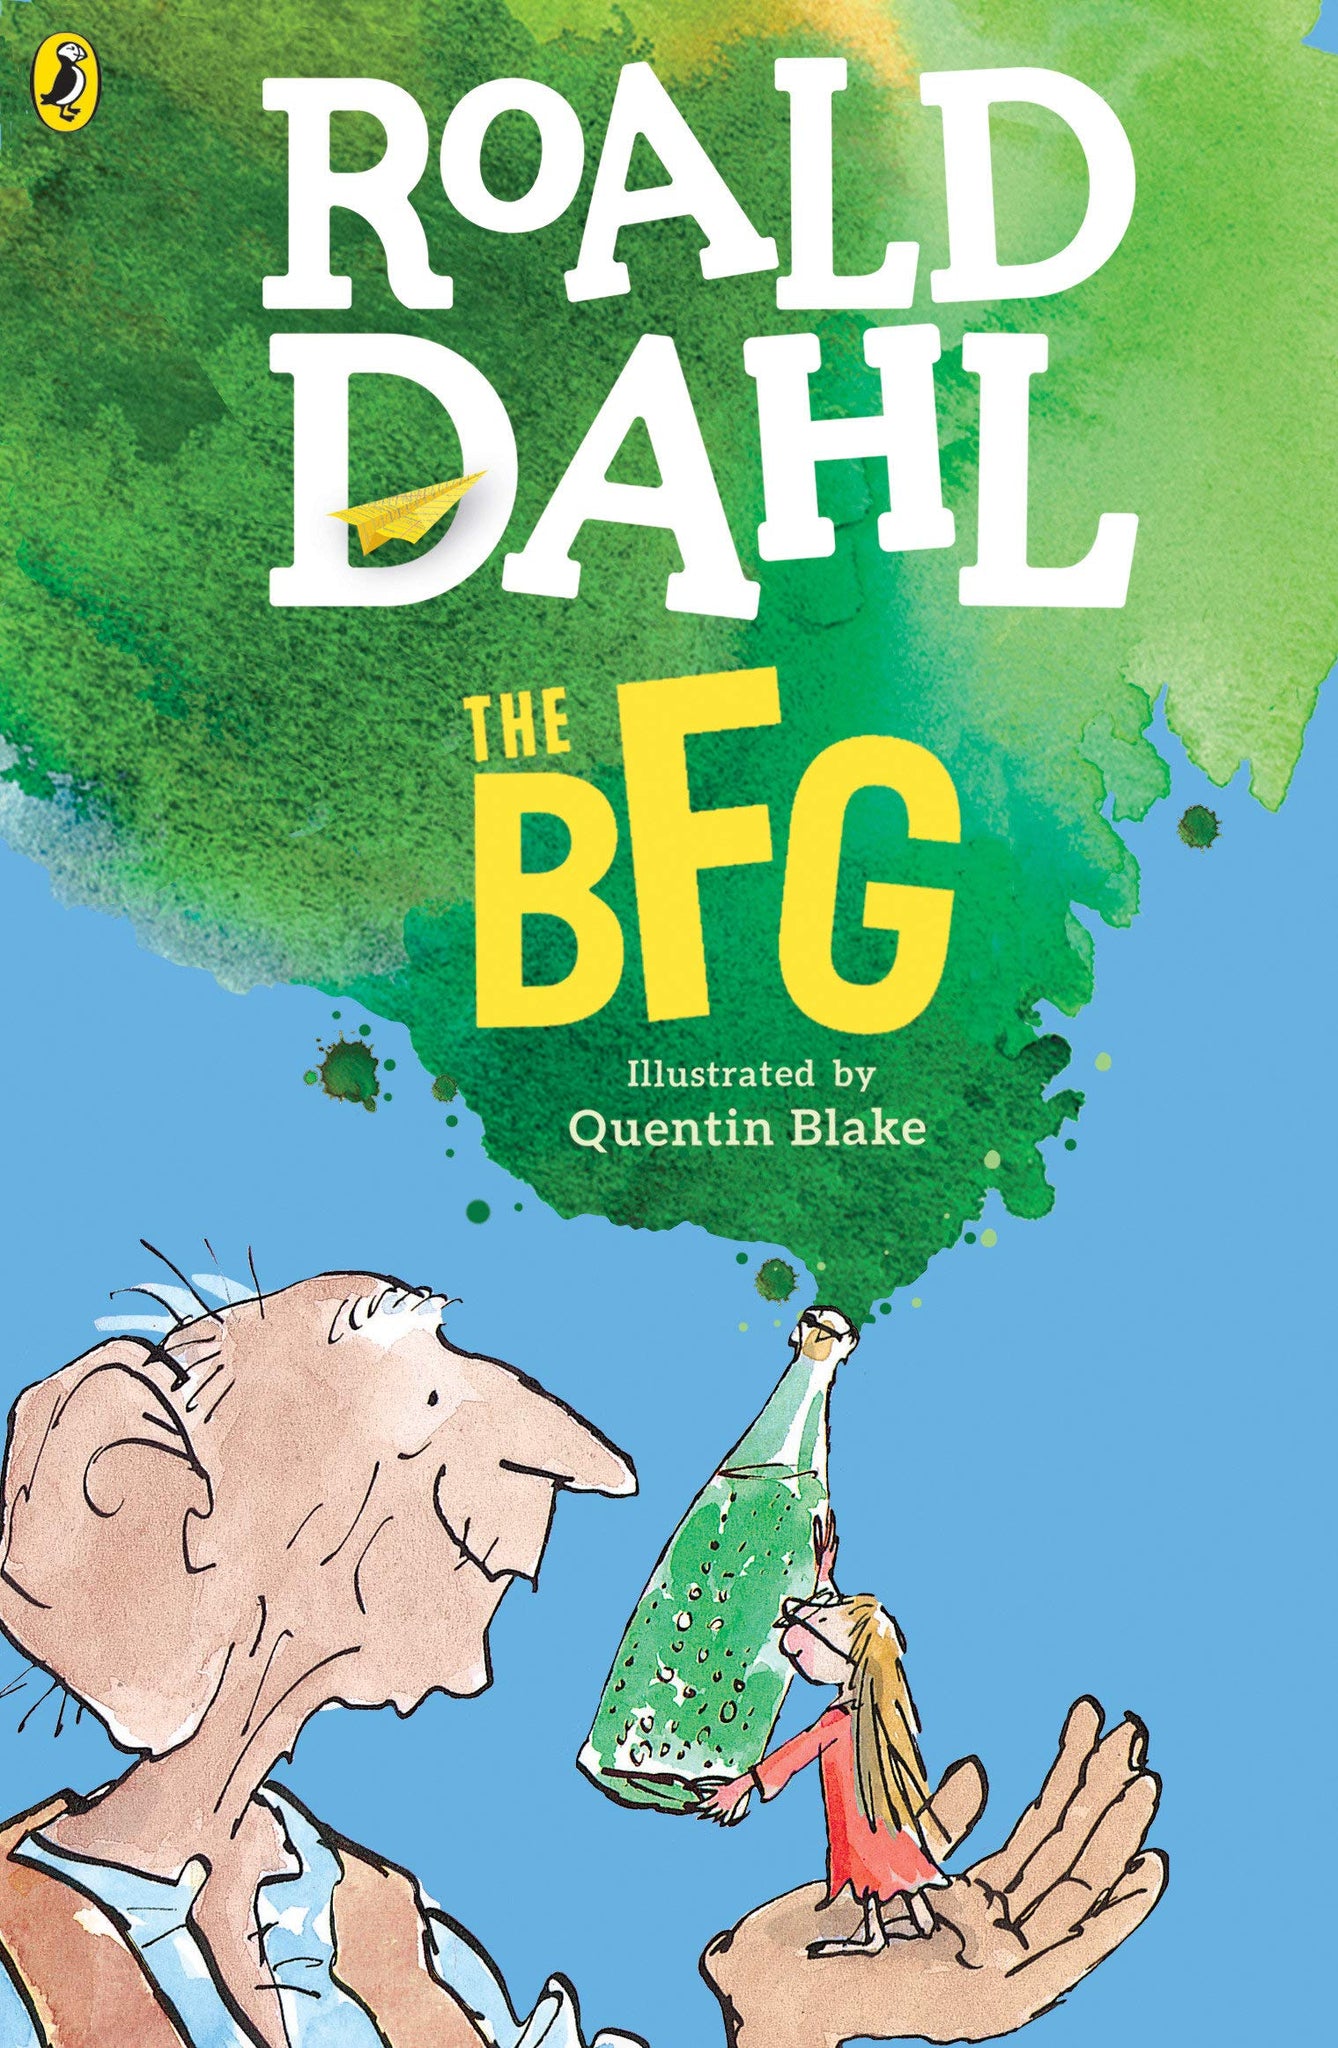 The BFG by Roald Dahl